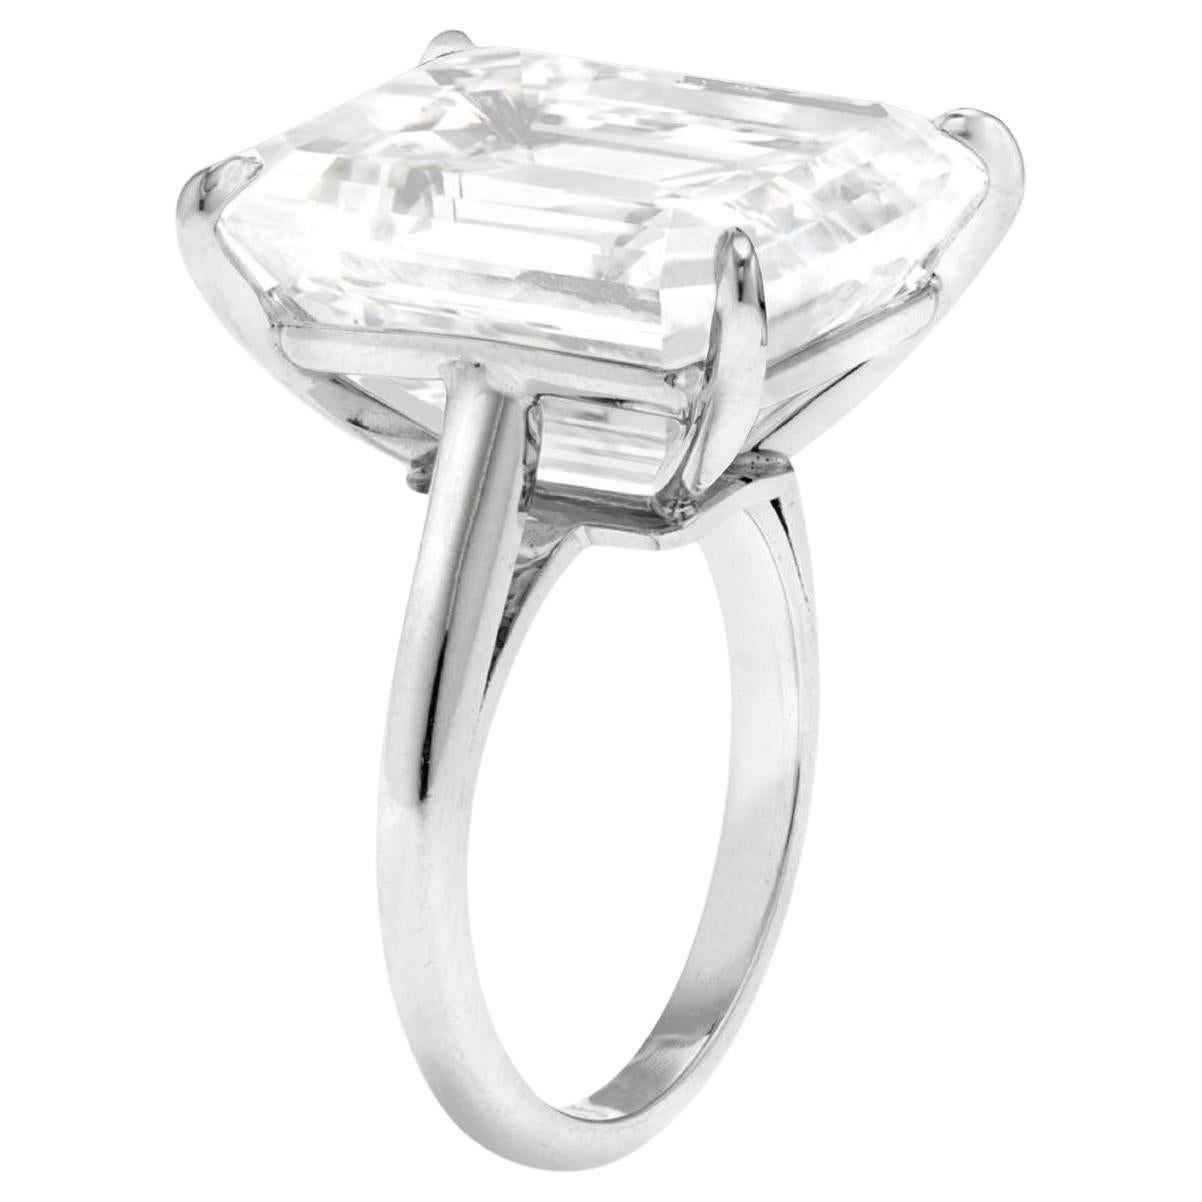 
Bague en platine avec diamant taille émeraude de 10,32 carats certifié par le GIA

